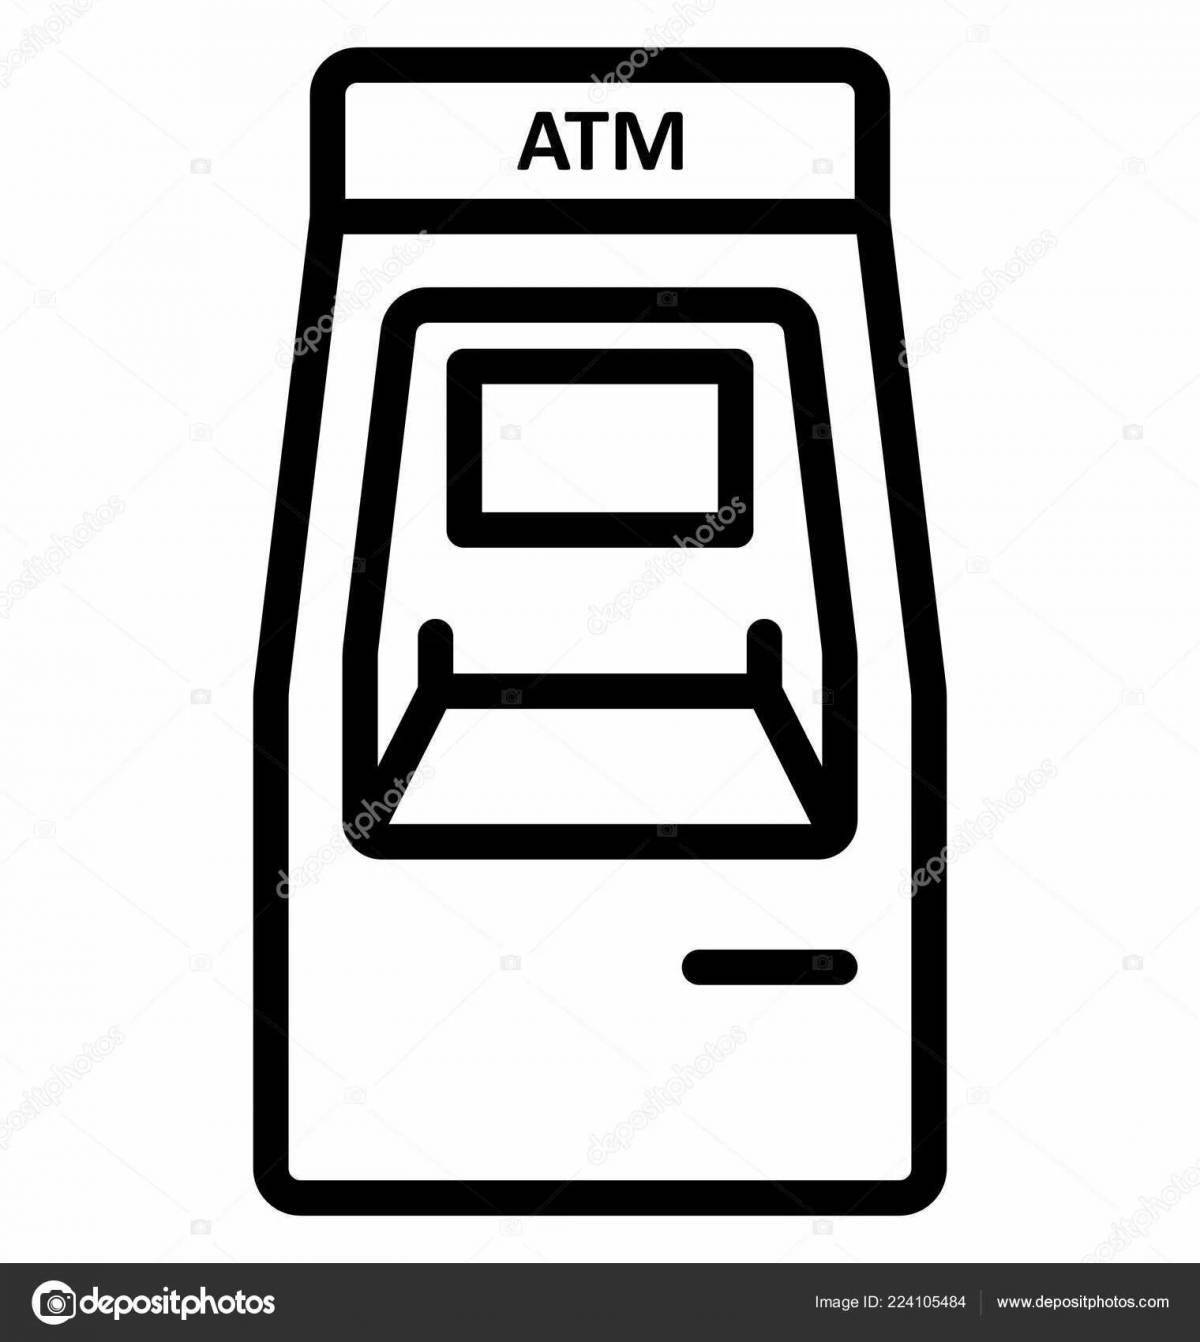 Colored ATM machine